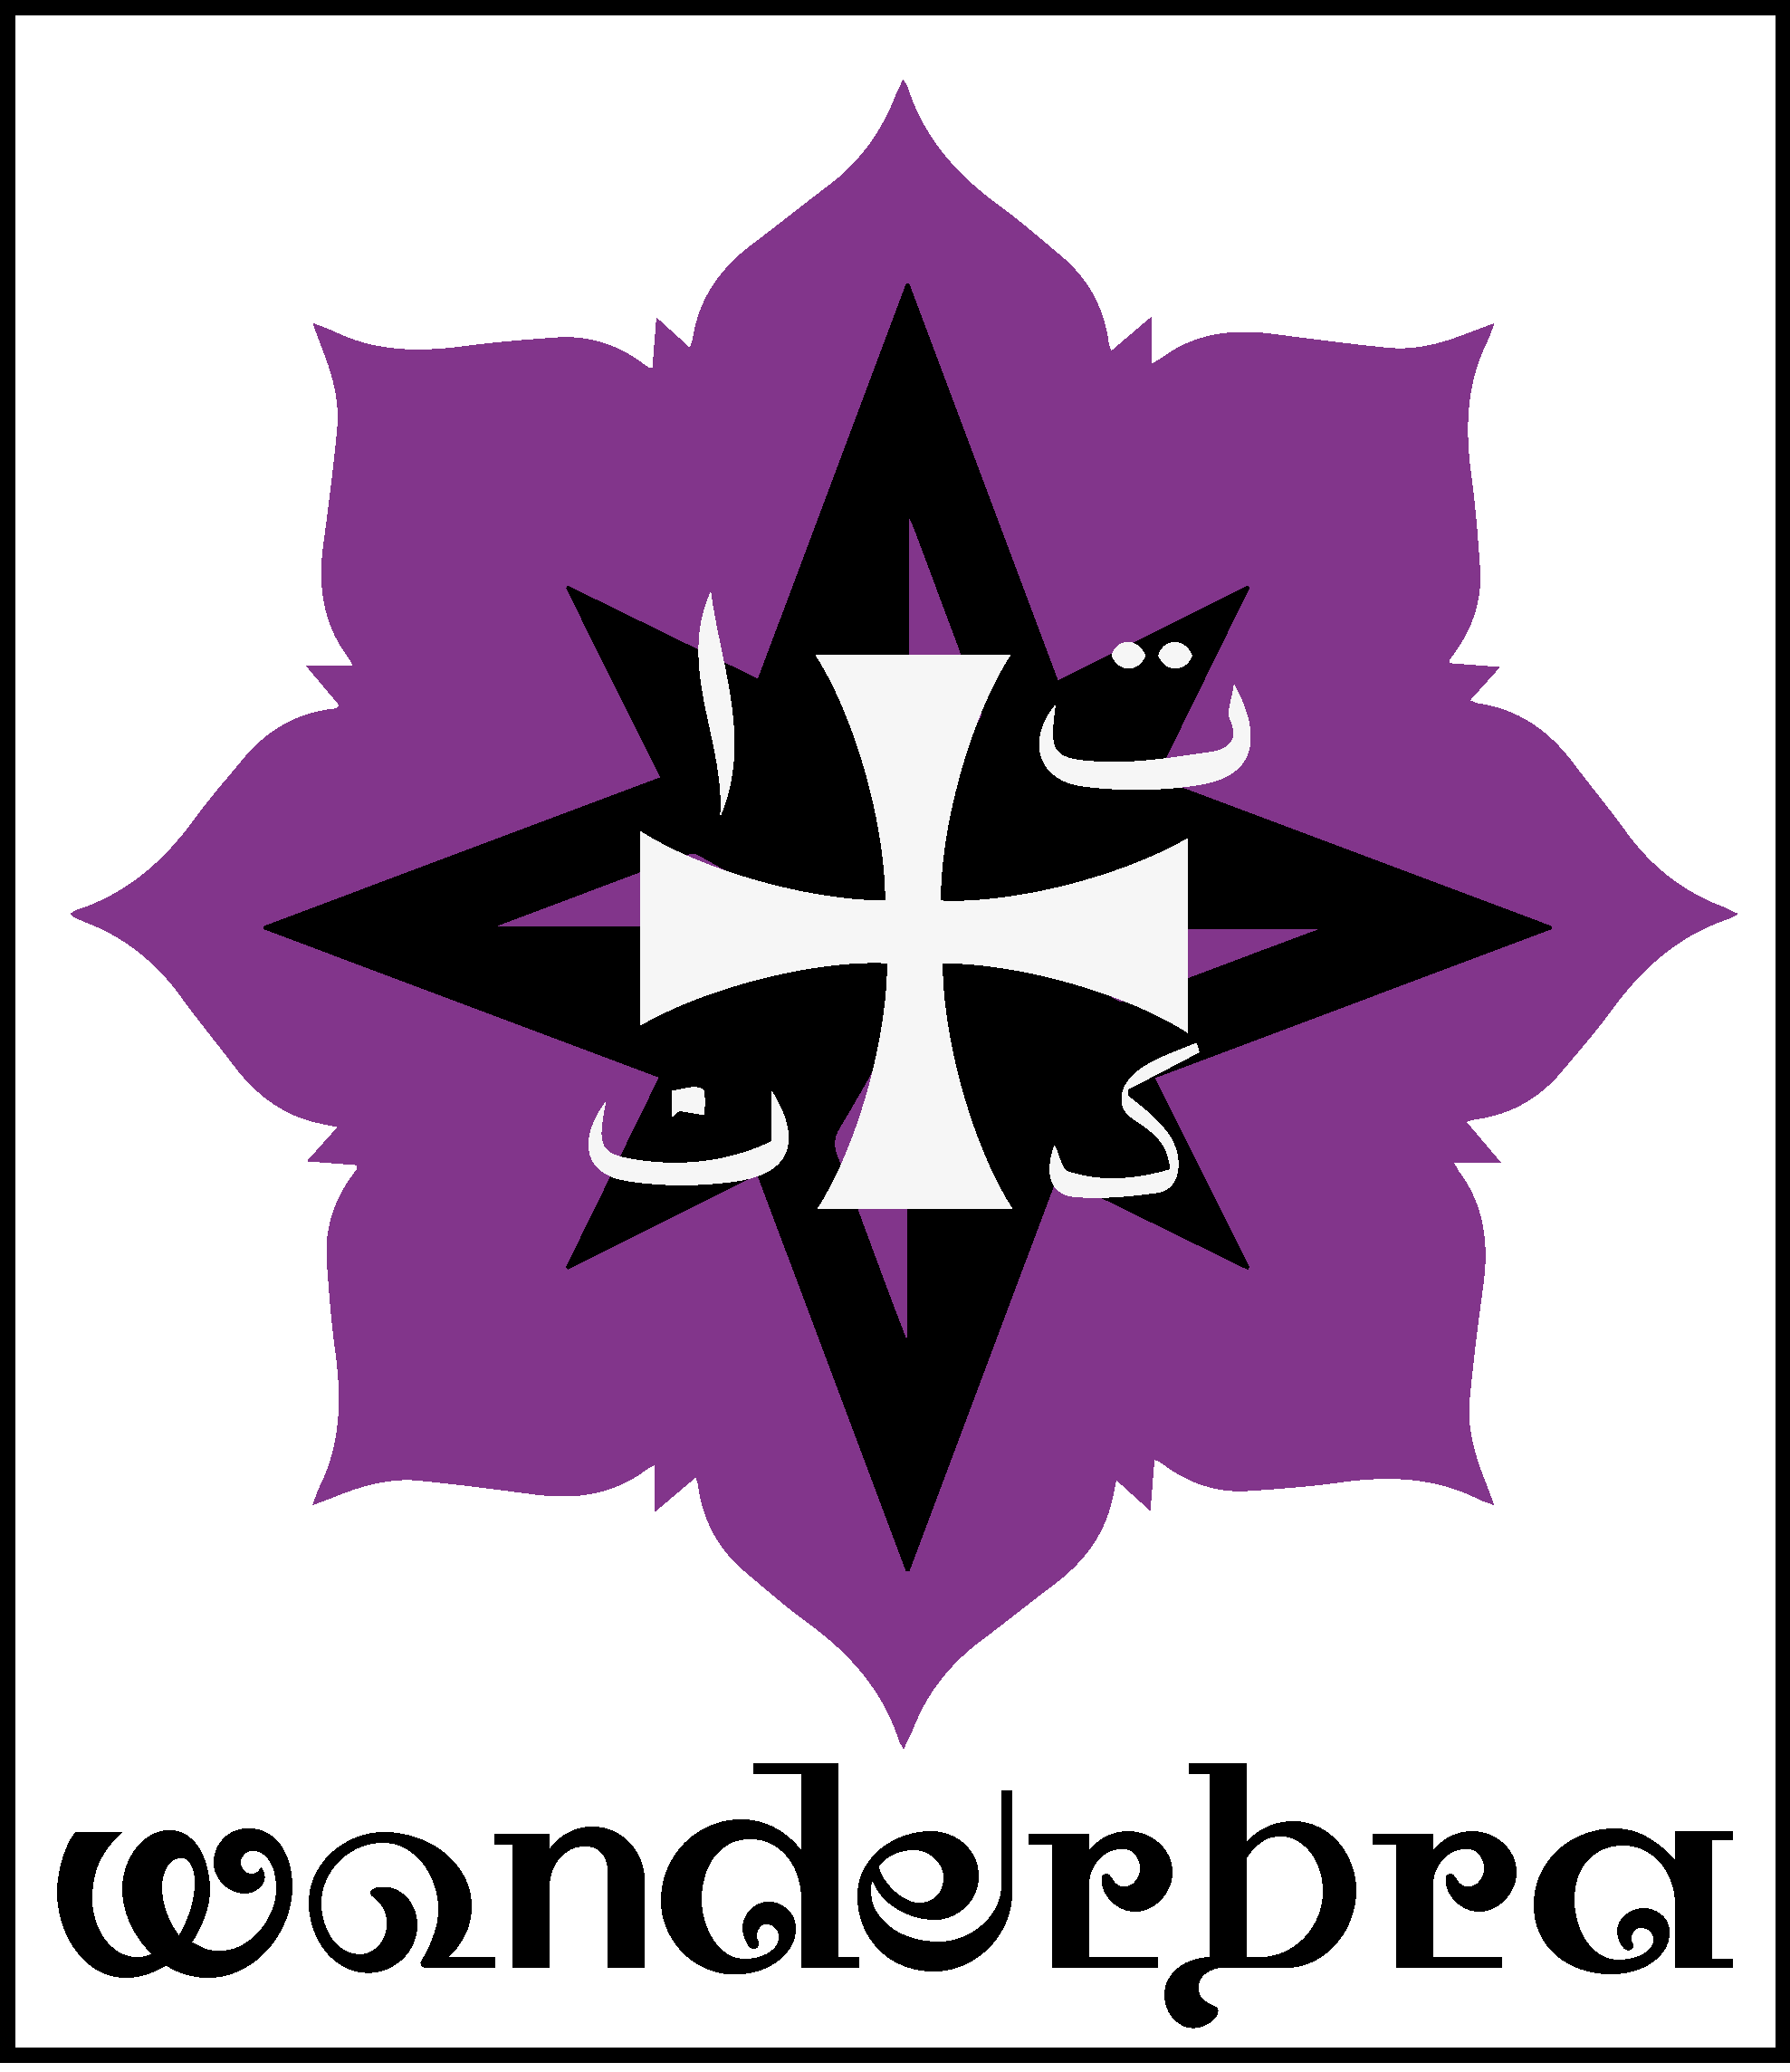 Wonderbra (band) - Wikipedia